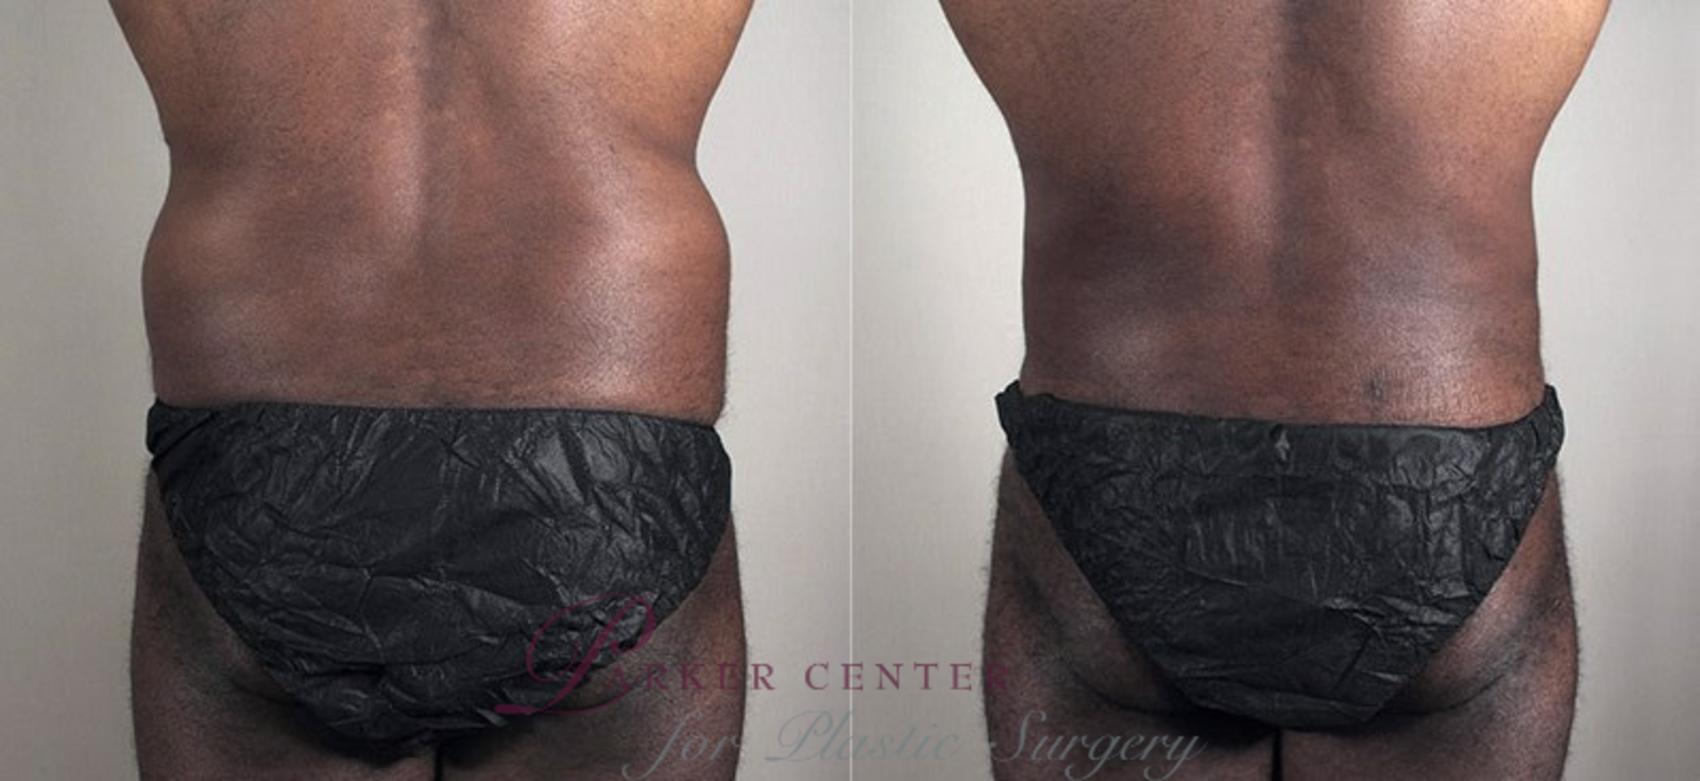 Liposuction Case 805 Before & After View #1 | Paramus, NJ | Parker Center for Plastic Surgery